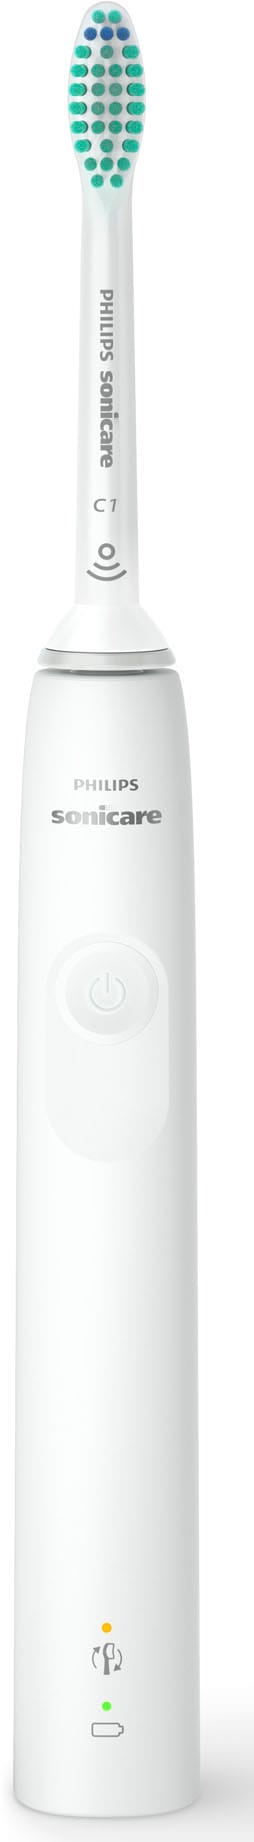 Philips Sonicare Elektrische Zahnbürste »Series 3100 HX3673«, 1 St. Aufsteckbürsten, mit Schalltechnologie, 4-Quadranten-Timer und 2-Minuten-Timer